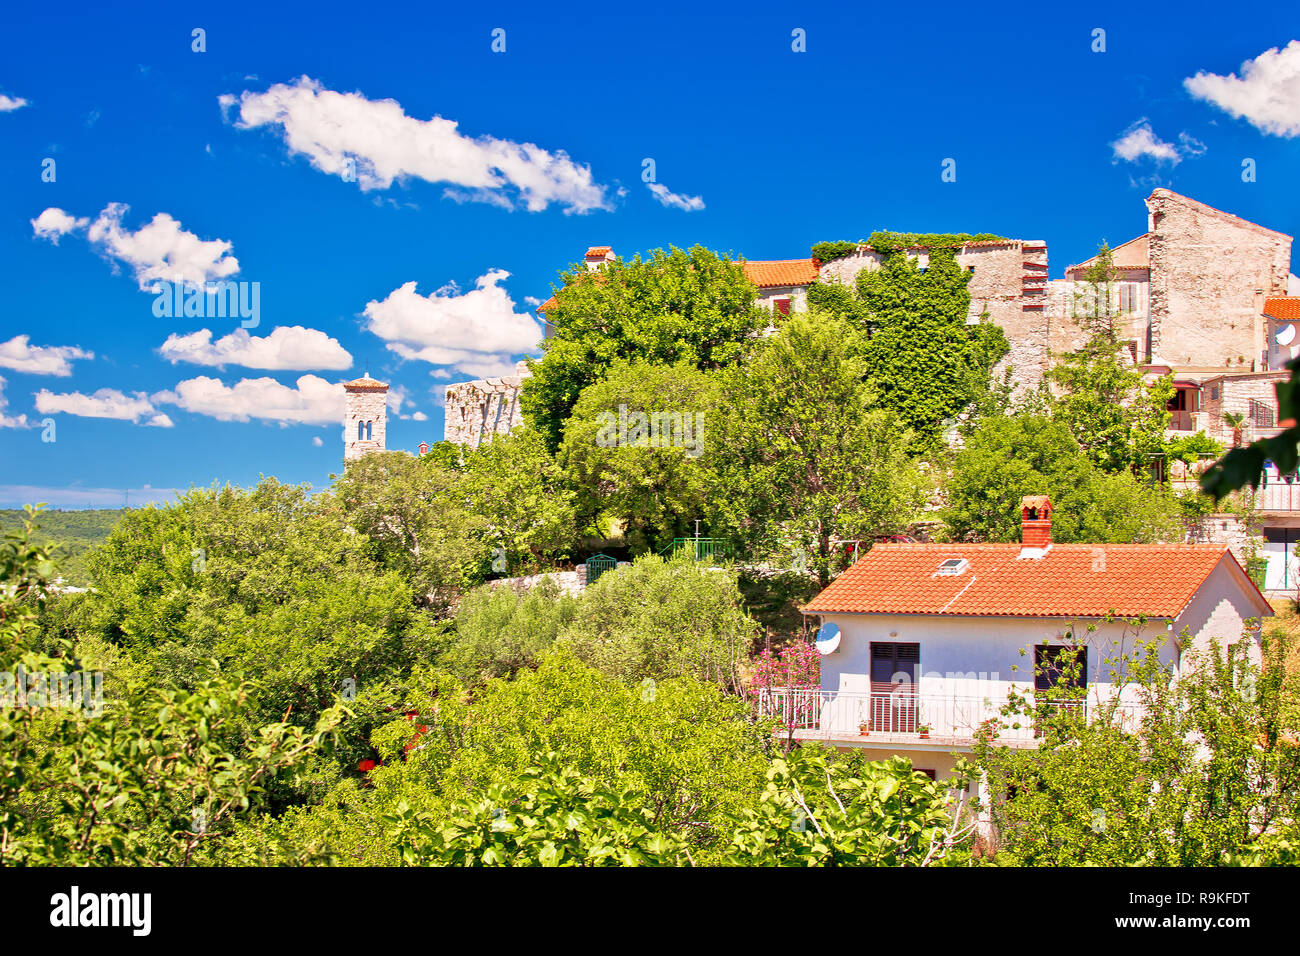 Idílico pueblo de piedra de Istria de Plomin en green hill view, región de Istria Croacia Foto de stock